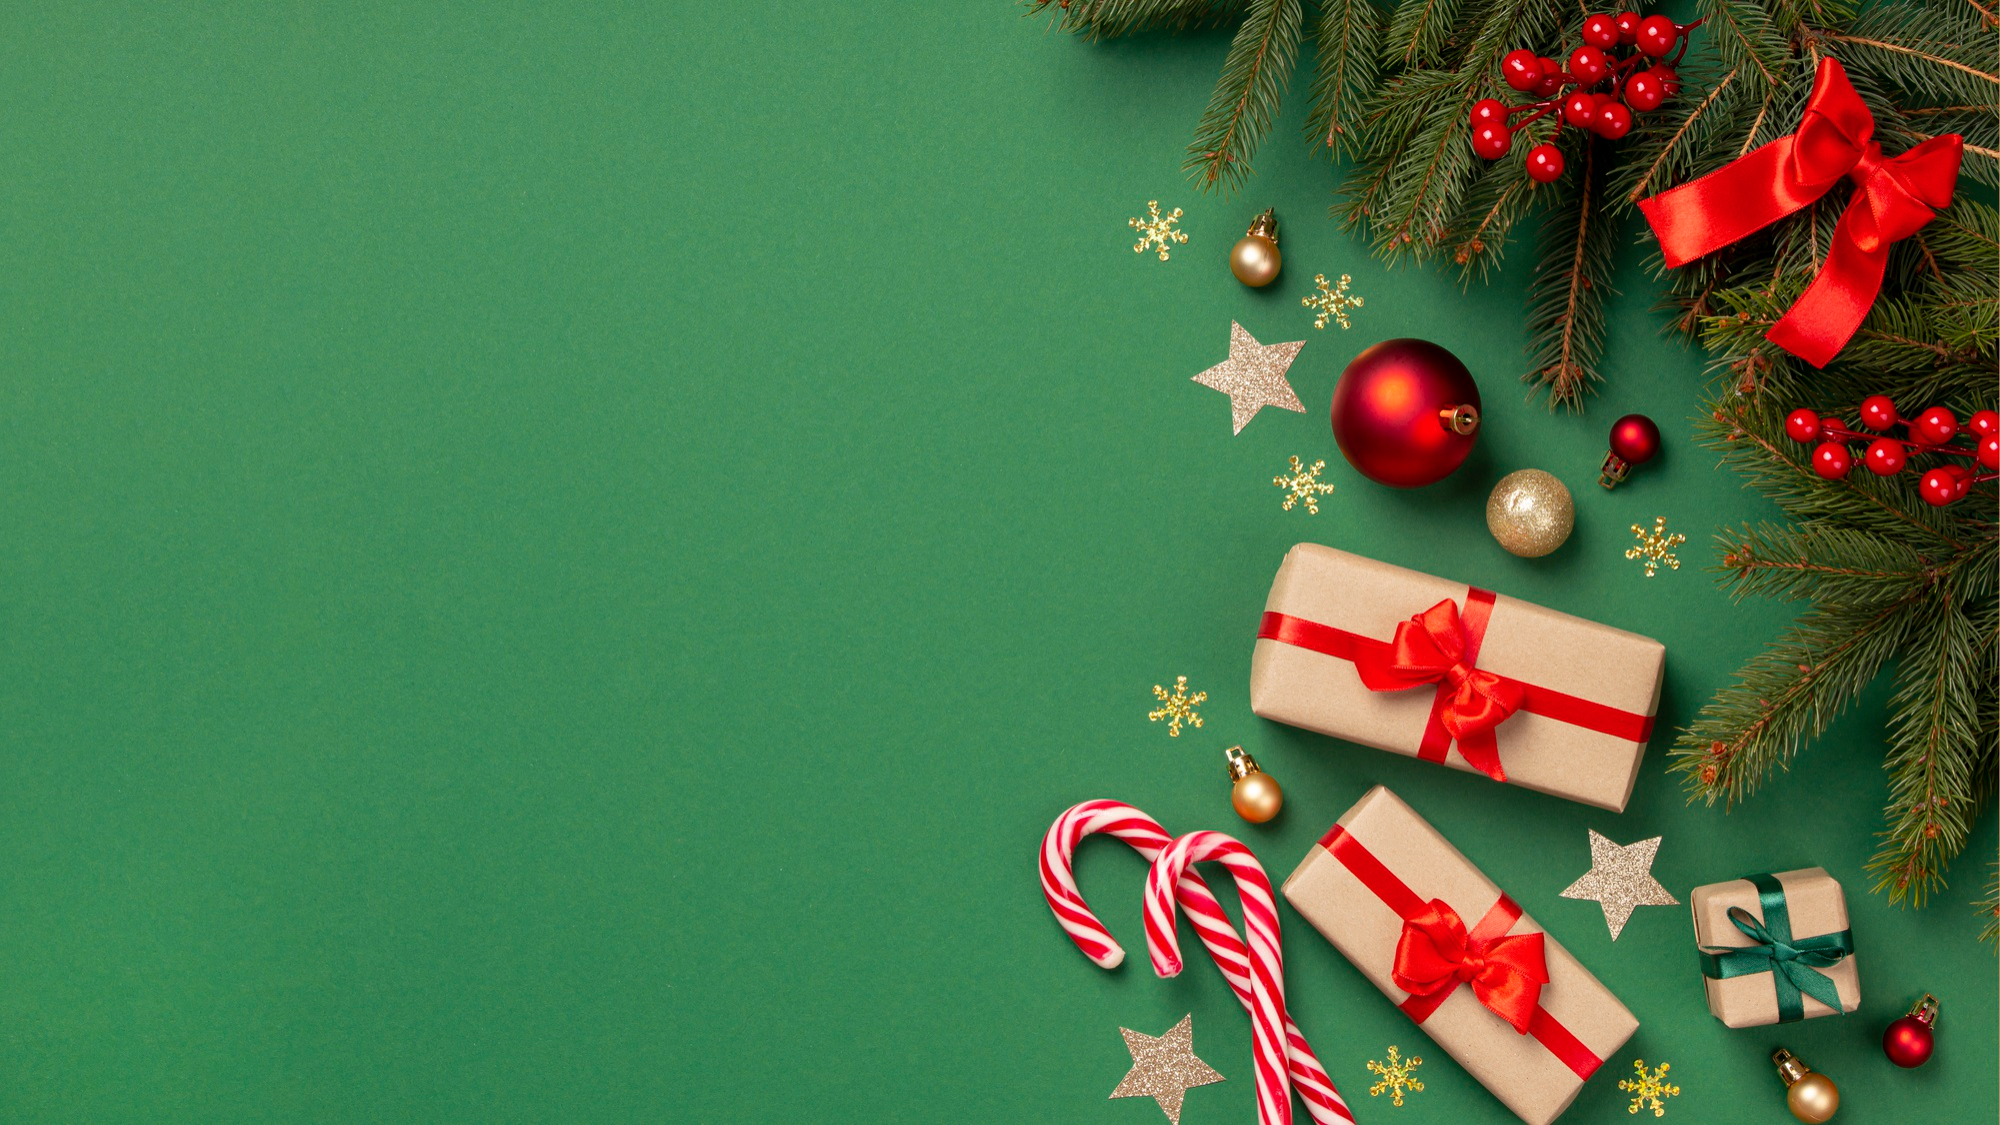 Símbolos do Natal, como bolas, caixa de presente, laços e guirlanda, espalhados por um fundo verde